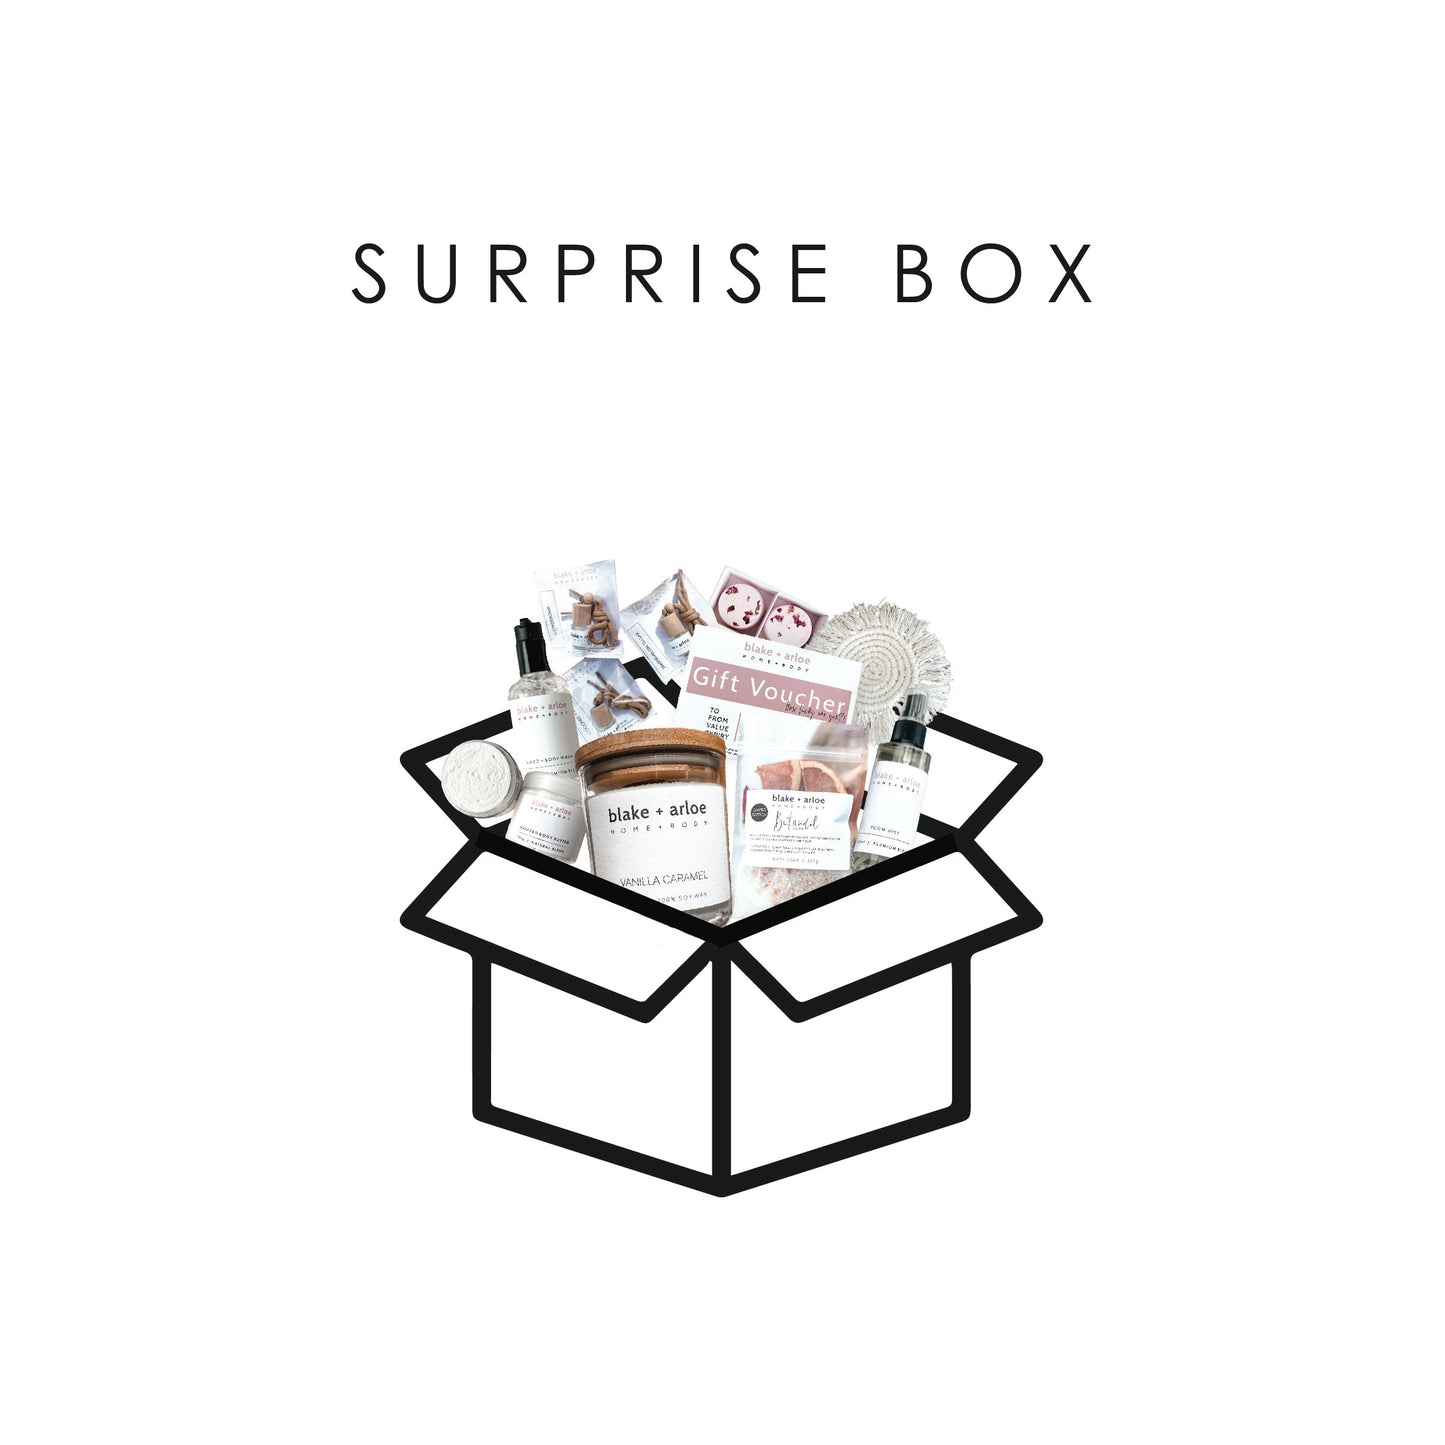 Blake + Arloe Surprise Box